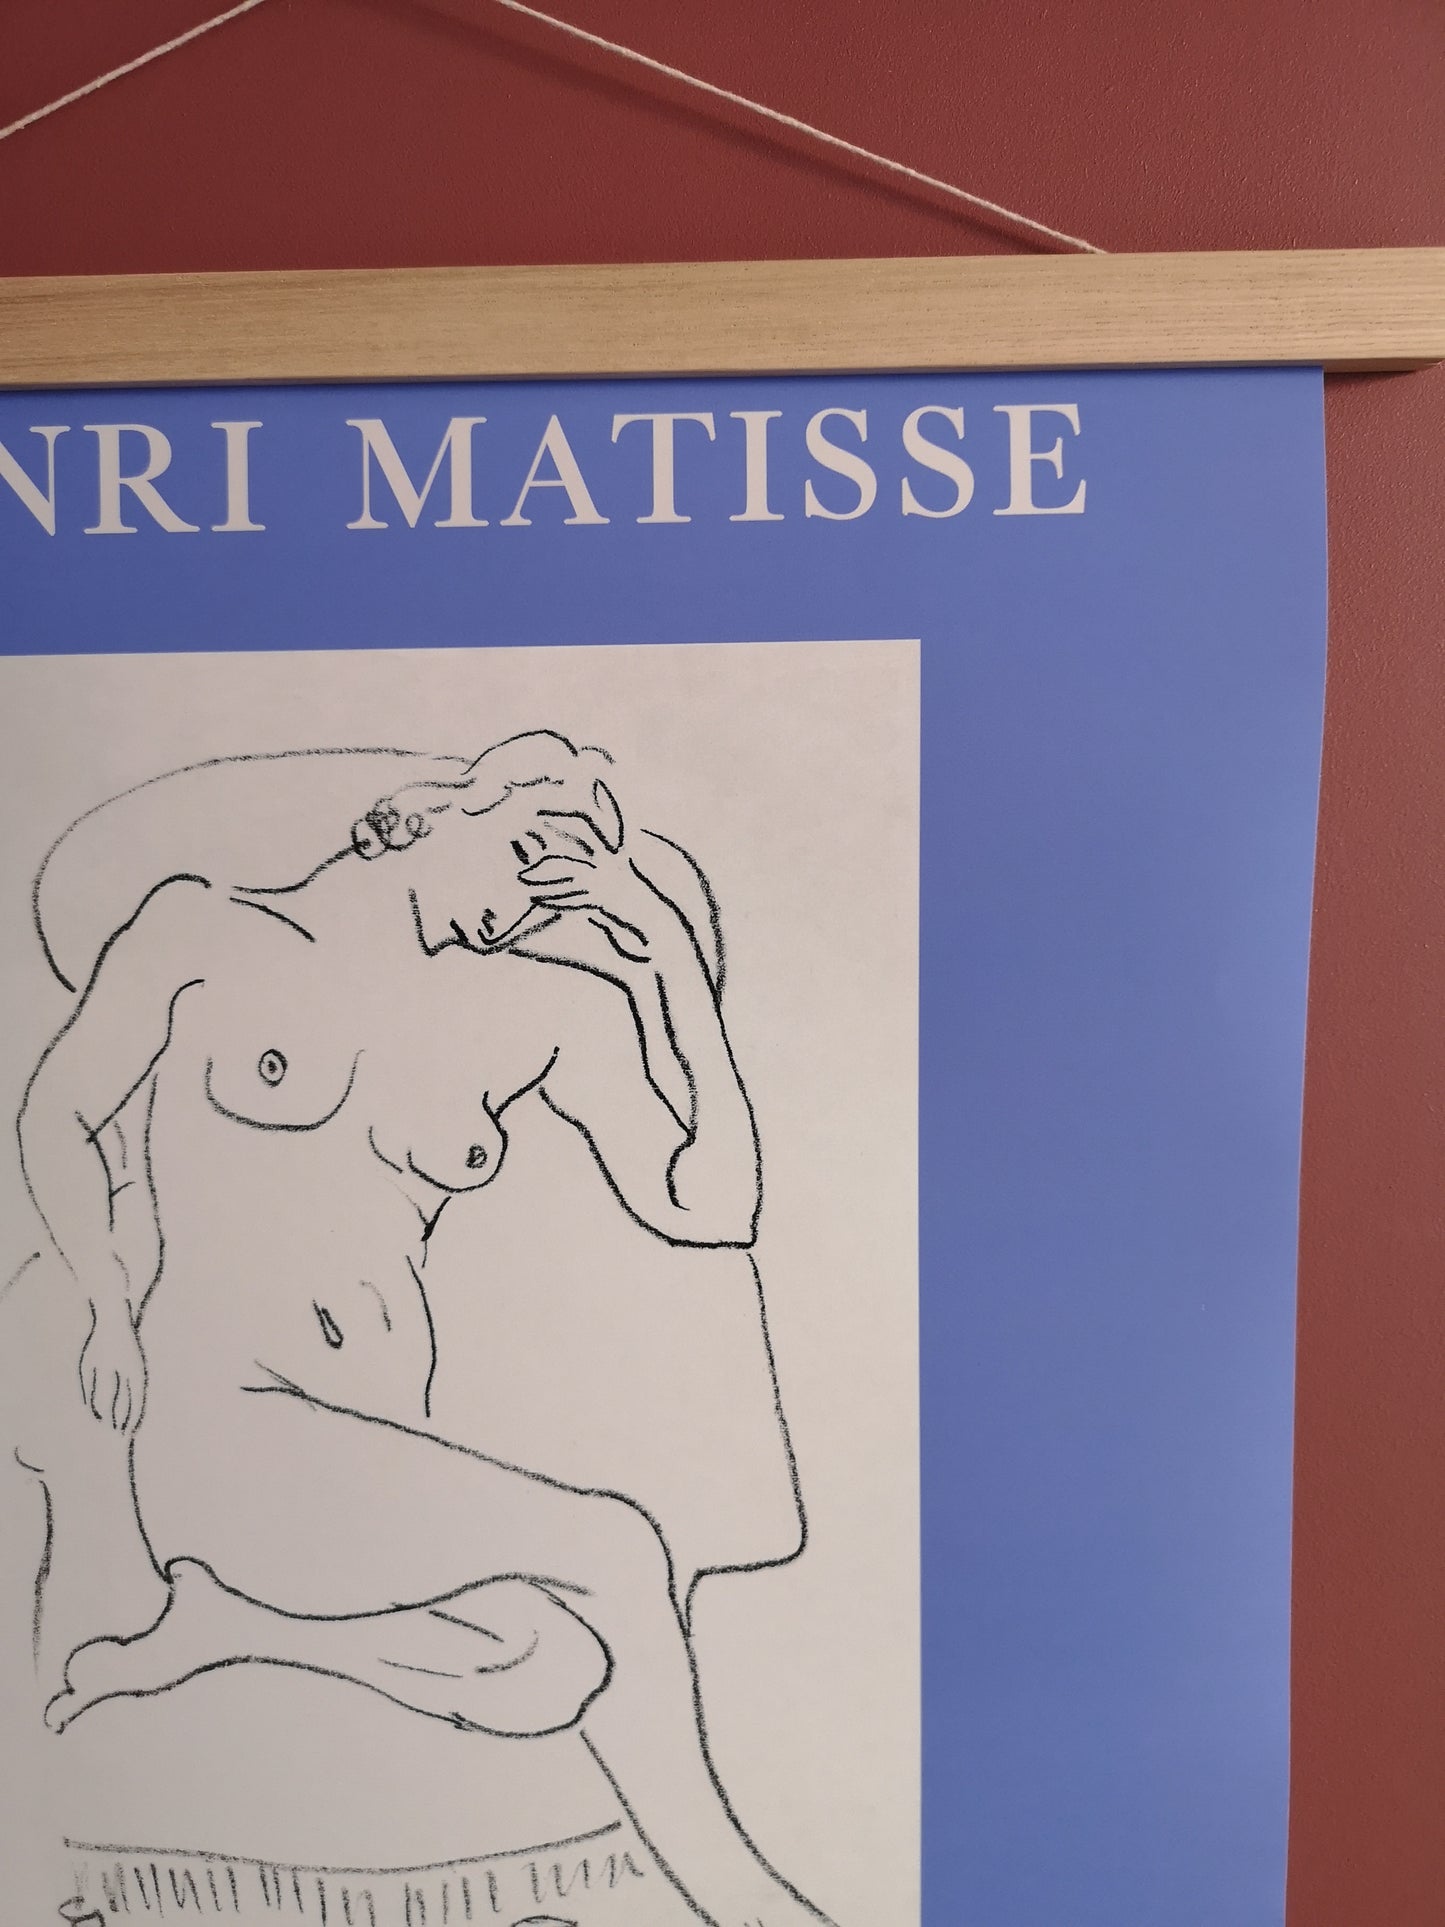 Illustration Matisse bleu lavande - The Printable Concept